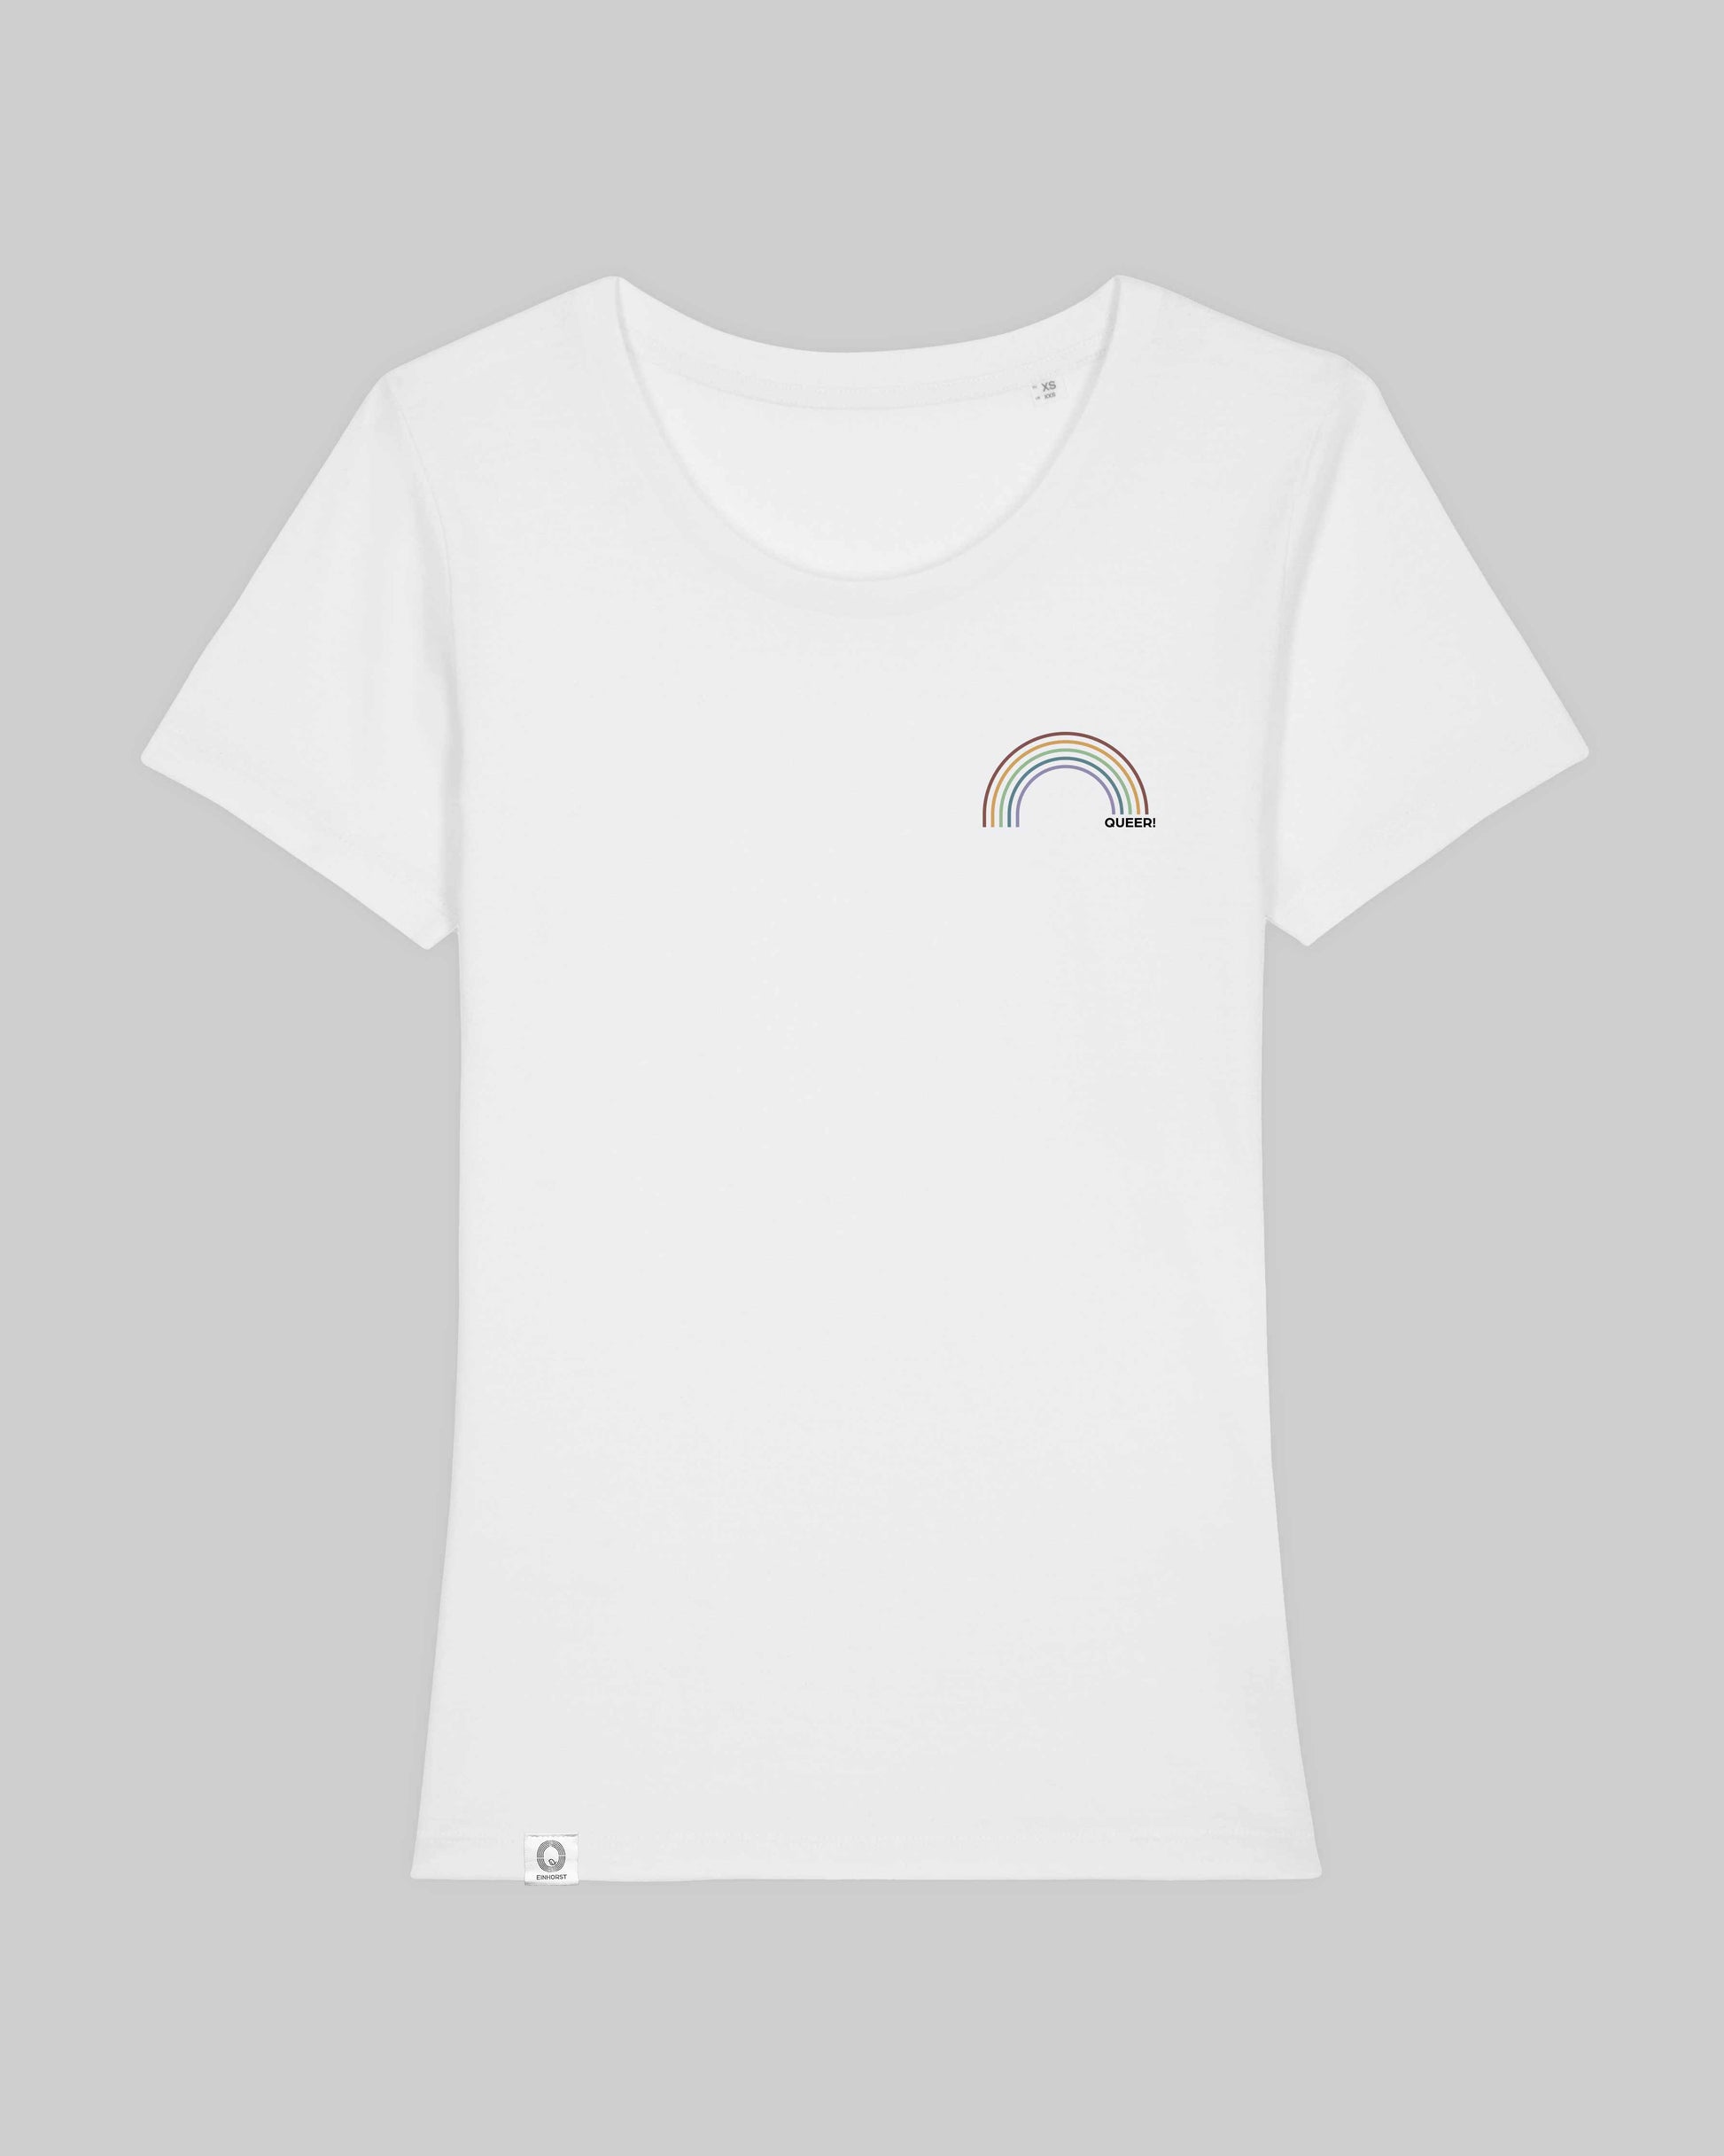 EINHORST® Organic Shirt tailliert in "Weiß" mit dem Motiv "queer Regenbogen" in der Kombination bunter Regenbogen mit schwarzer Schrift, Bild von Shirt von vorne